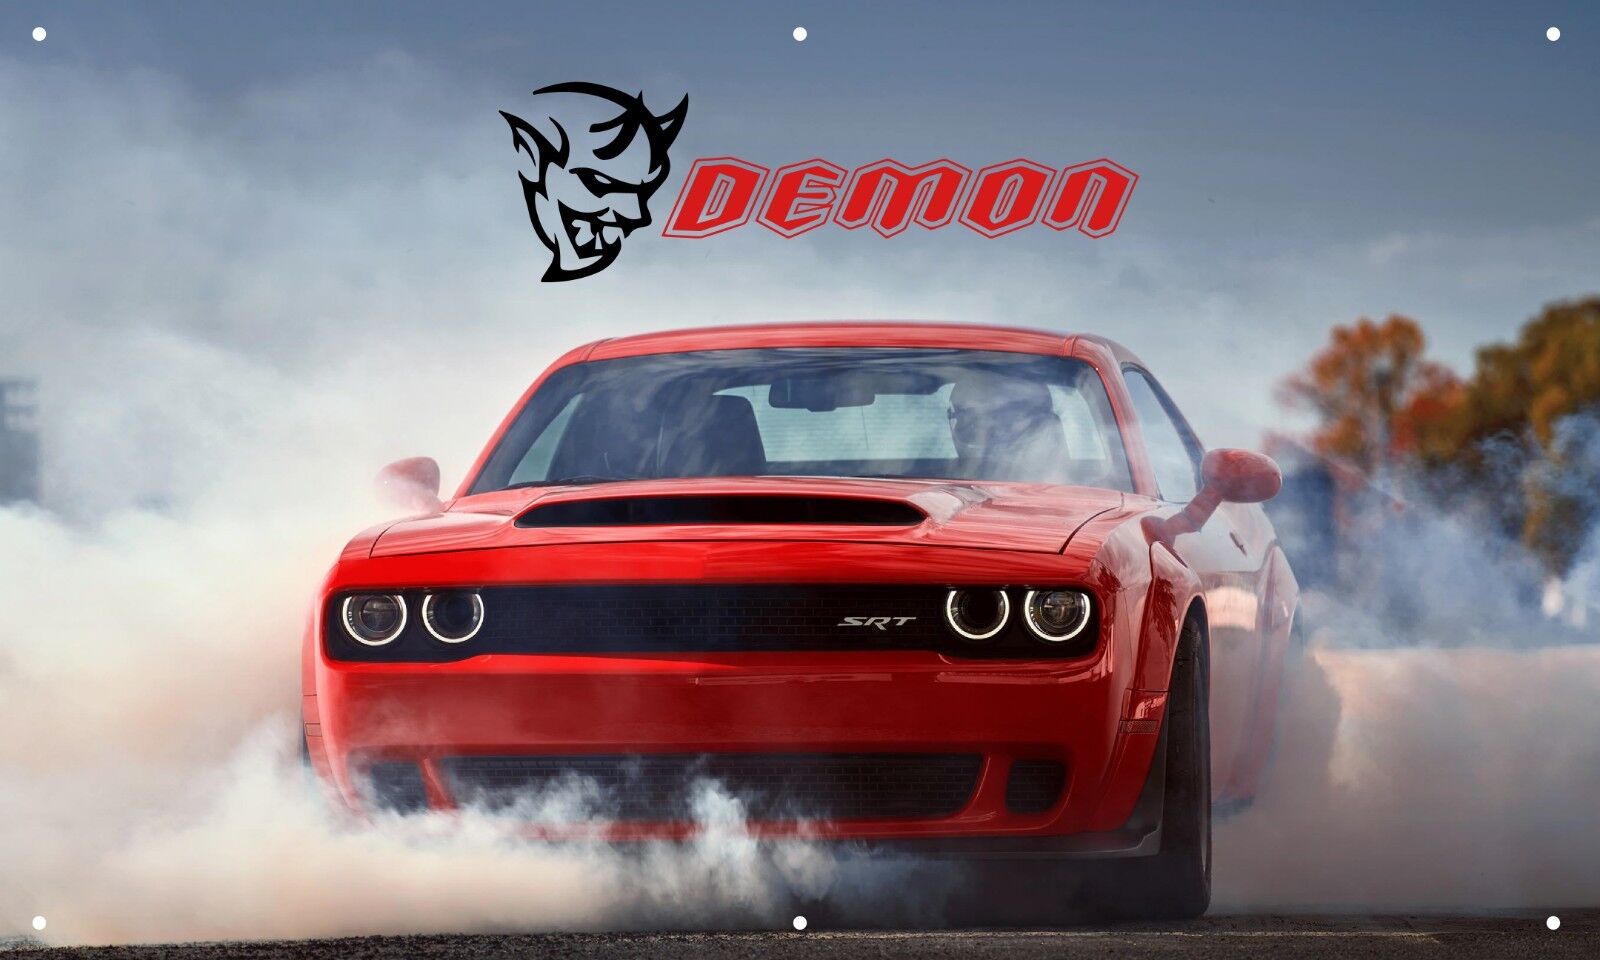 Dodge Demon Burnout 3\'X5\' VINYL BANNER MAN CAVE AMERICAN MUSCLE CAR RACE CAR RED